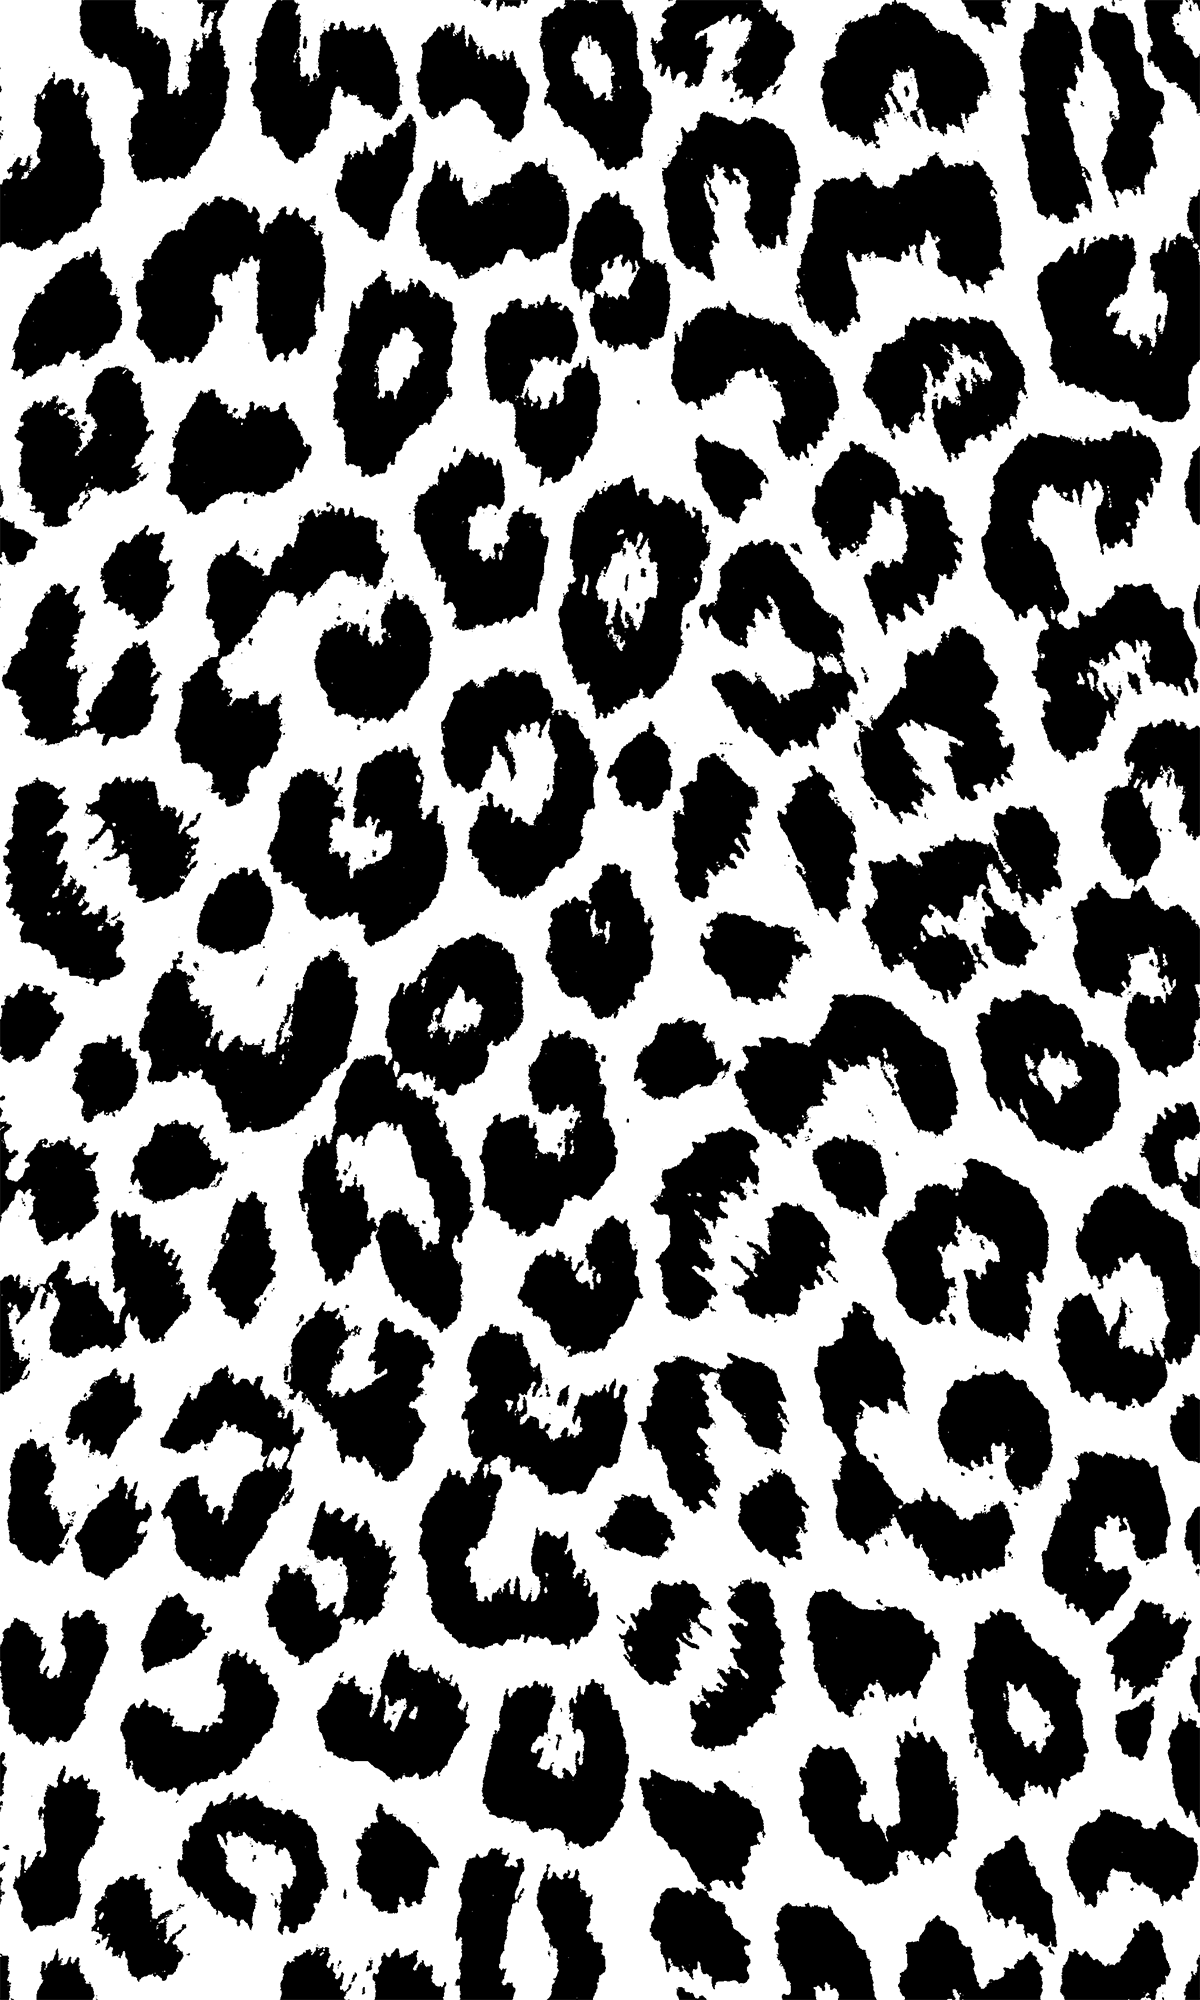 29 Cheetah Print iPhone Wallpapers  WallpaperSafari